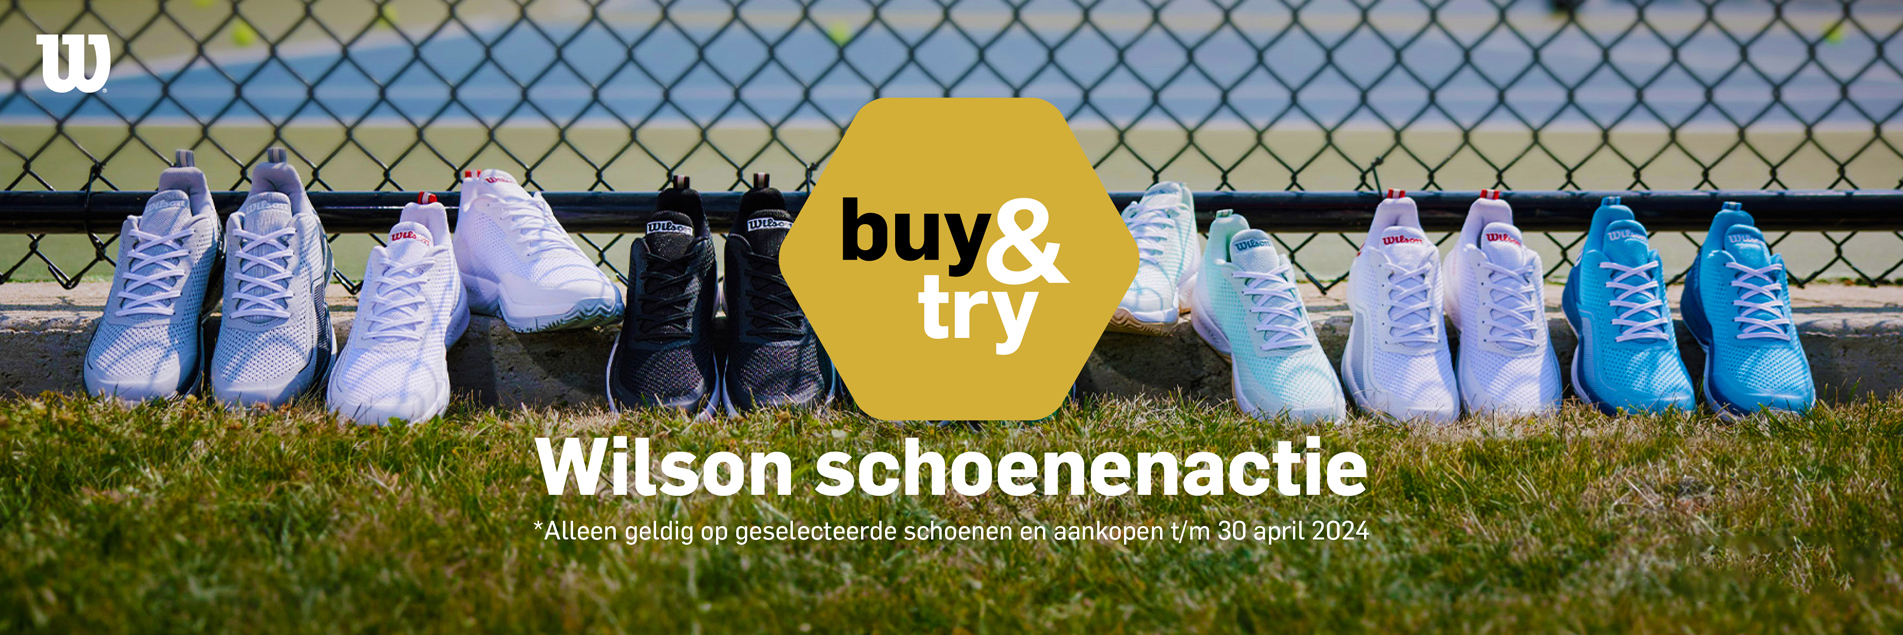 Wilson Buy & Try schoenenactie